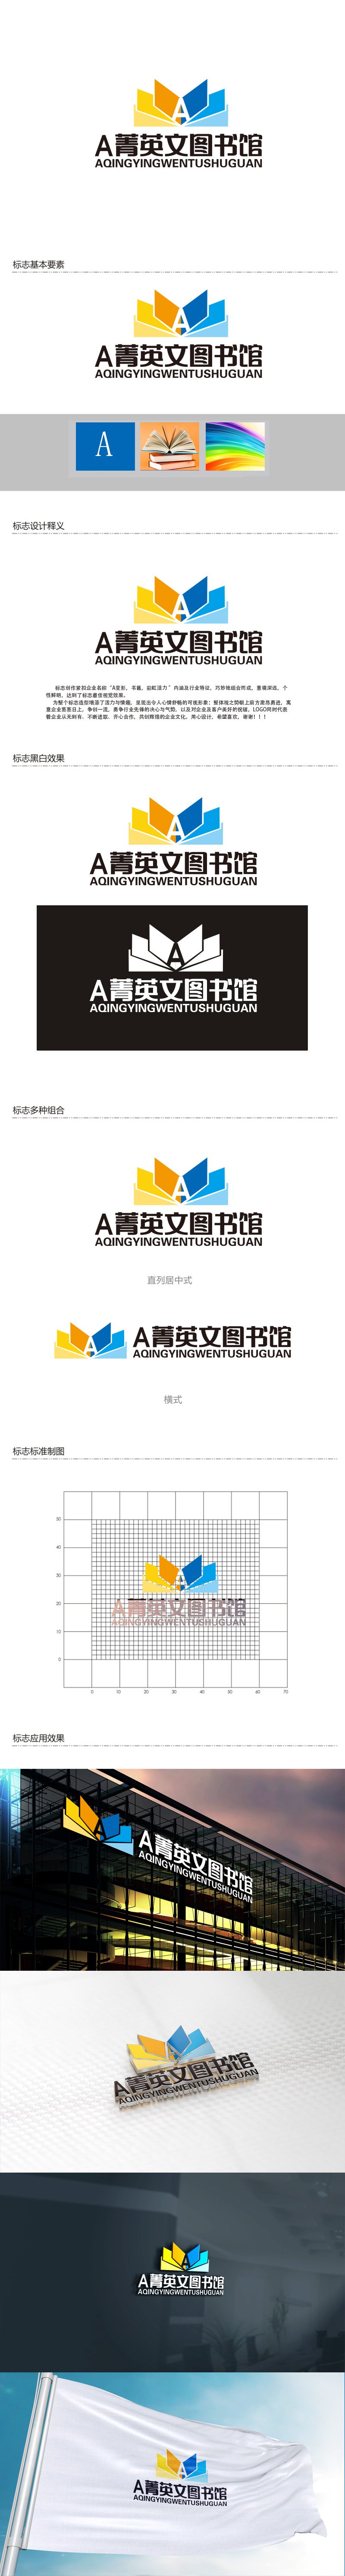 秦晓东的A菁英文图书馆logo设计